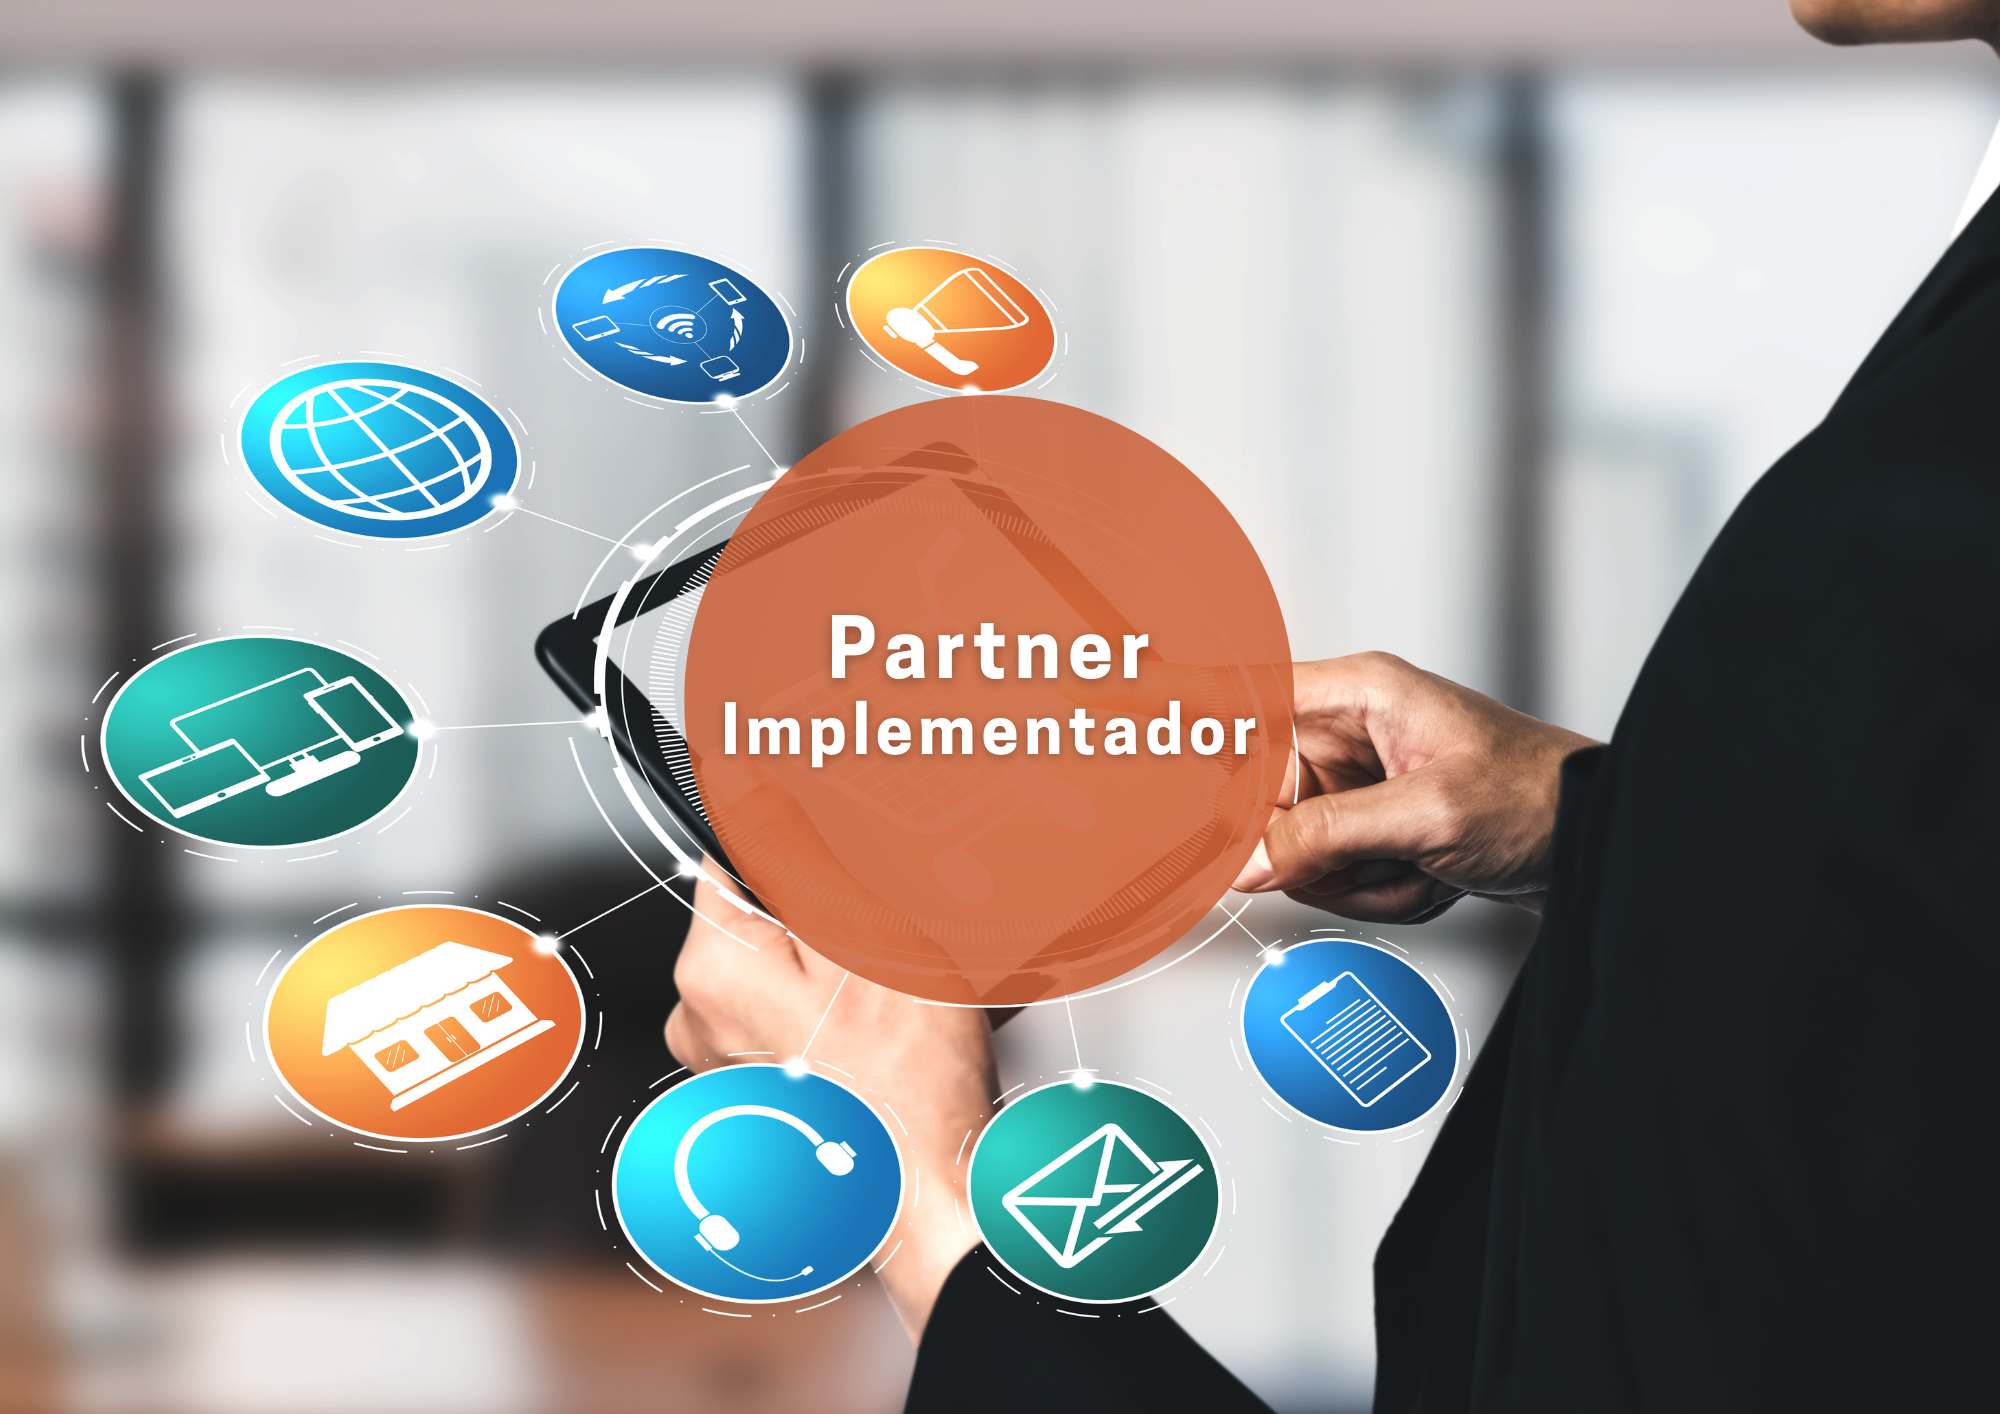 Certificación de Partner Implementador | Plataforma del Empleado